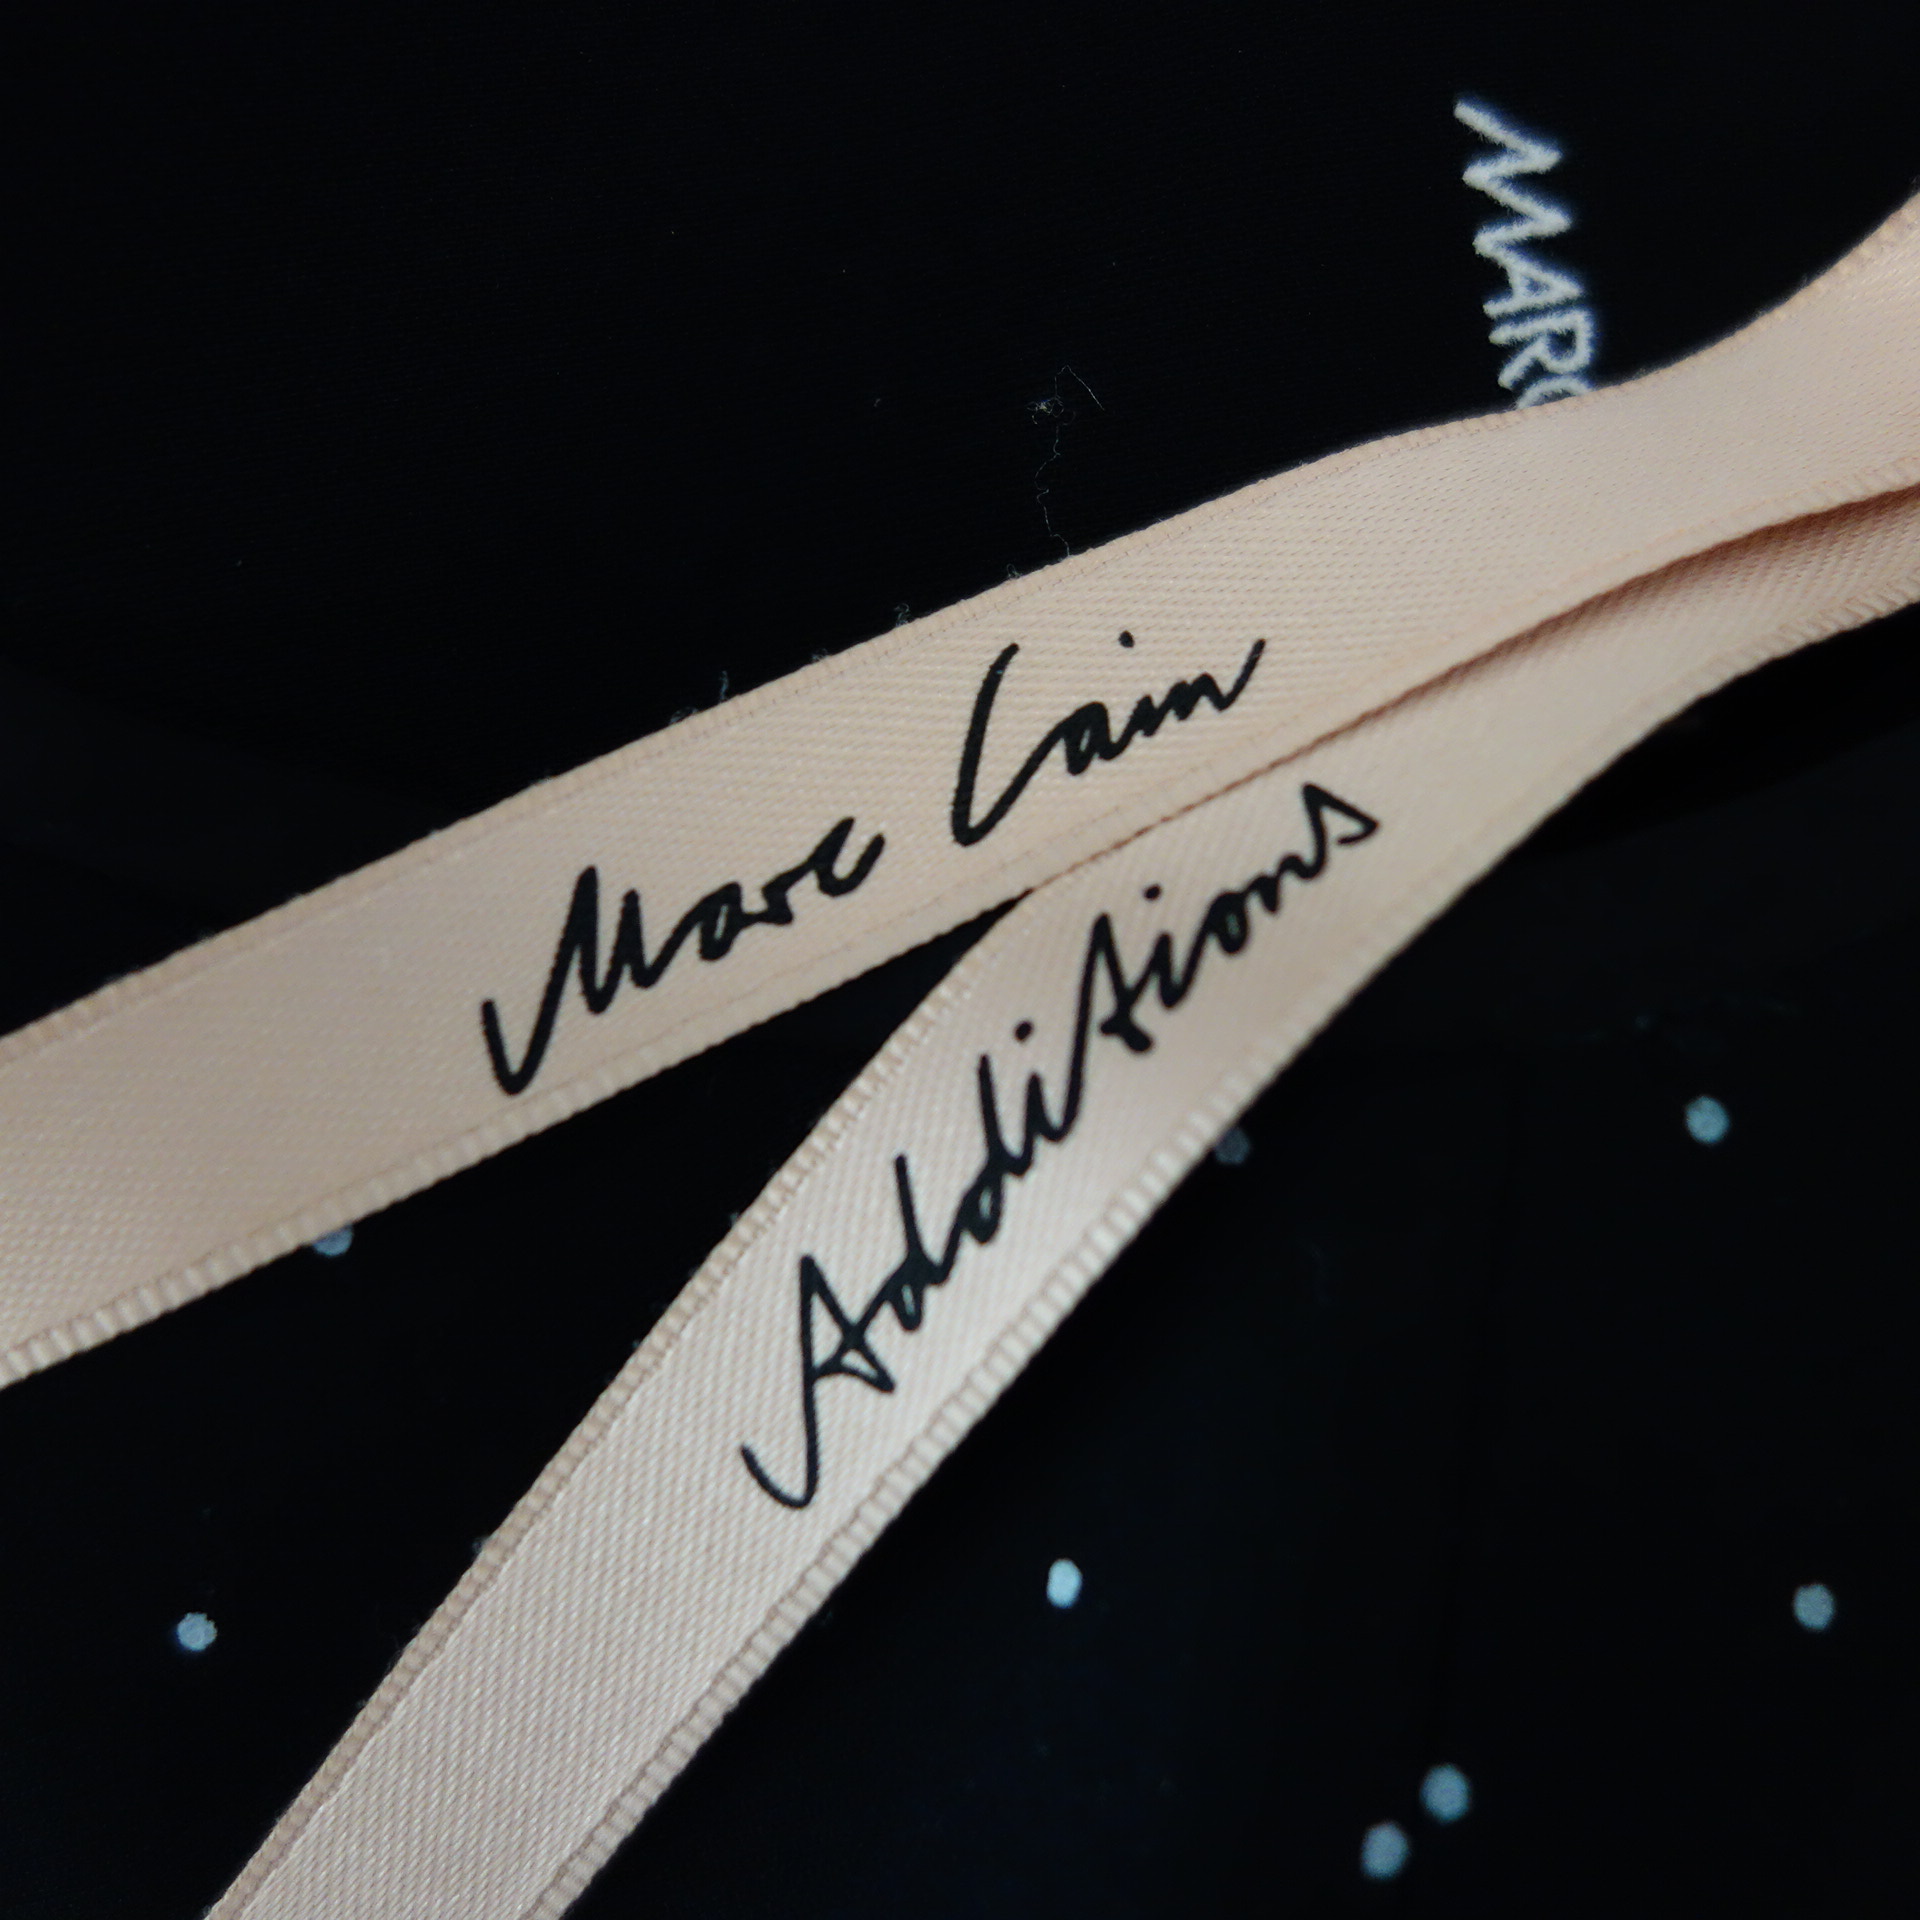 MARC CAIN Damen Kleid Midi Tunikakleid Blusenkleid Schwarz Punkte Spitze Np 249 Neu